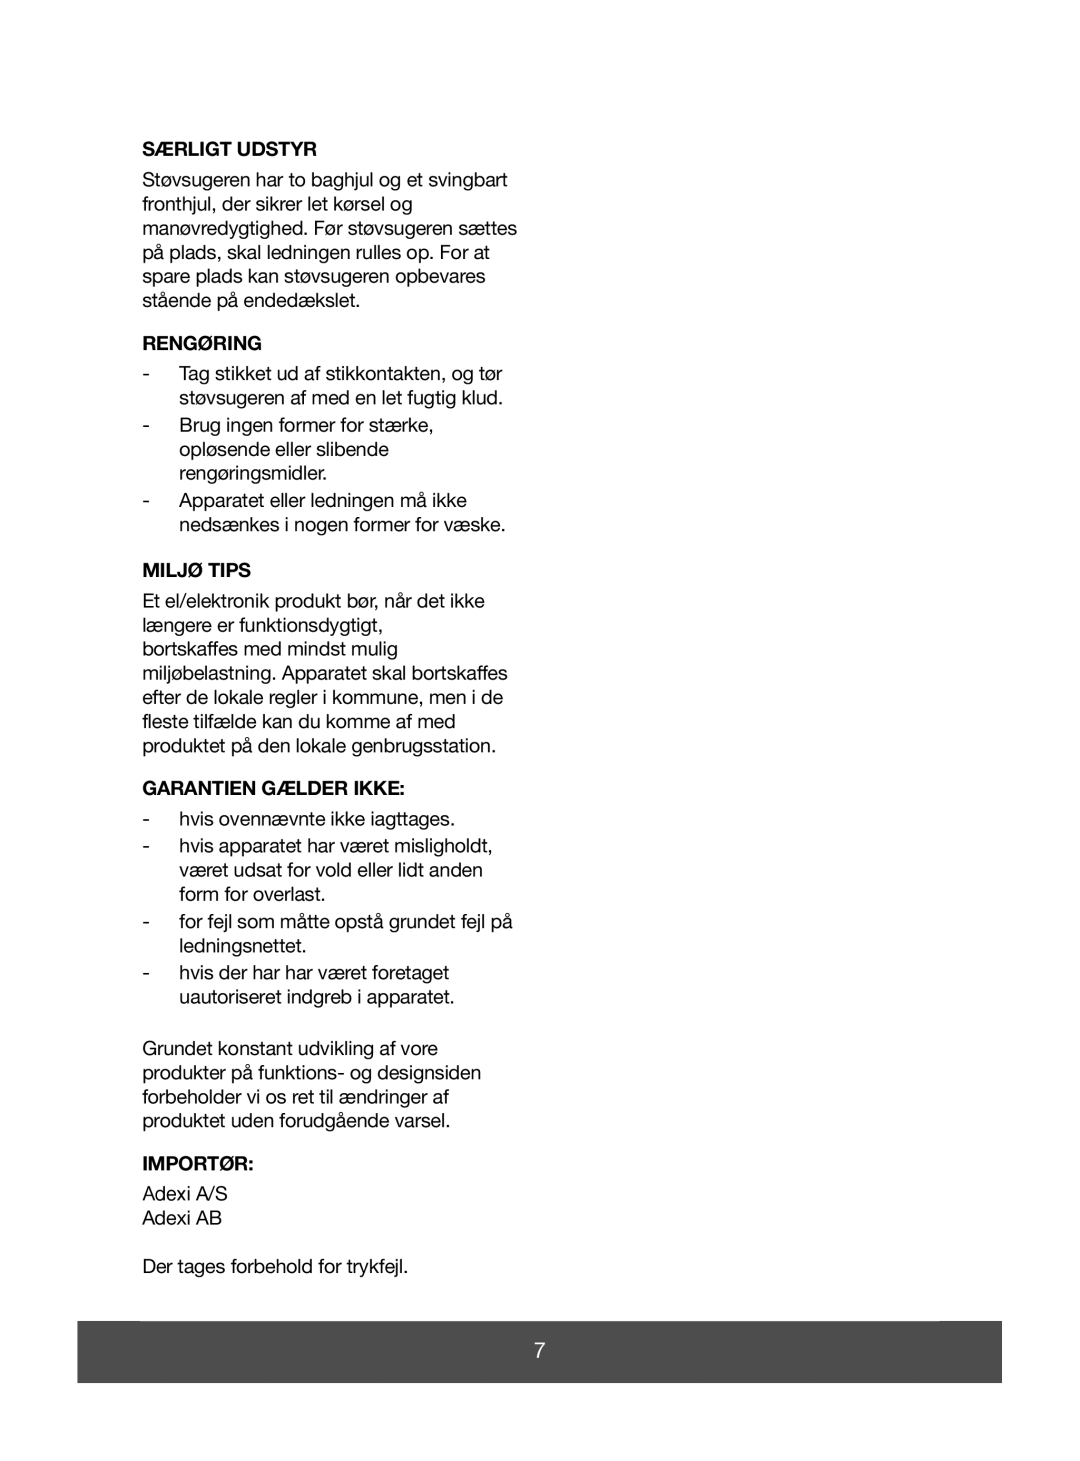 Melissa 640-049 manual Særligt Udstyr, Rengøring, Miljø Tips, Garantien Gælder Ikke, Importør 